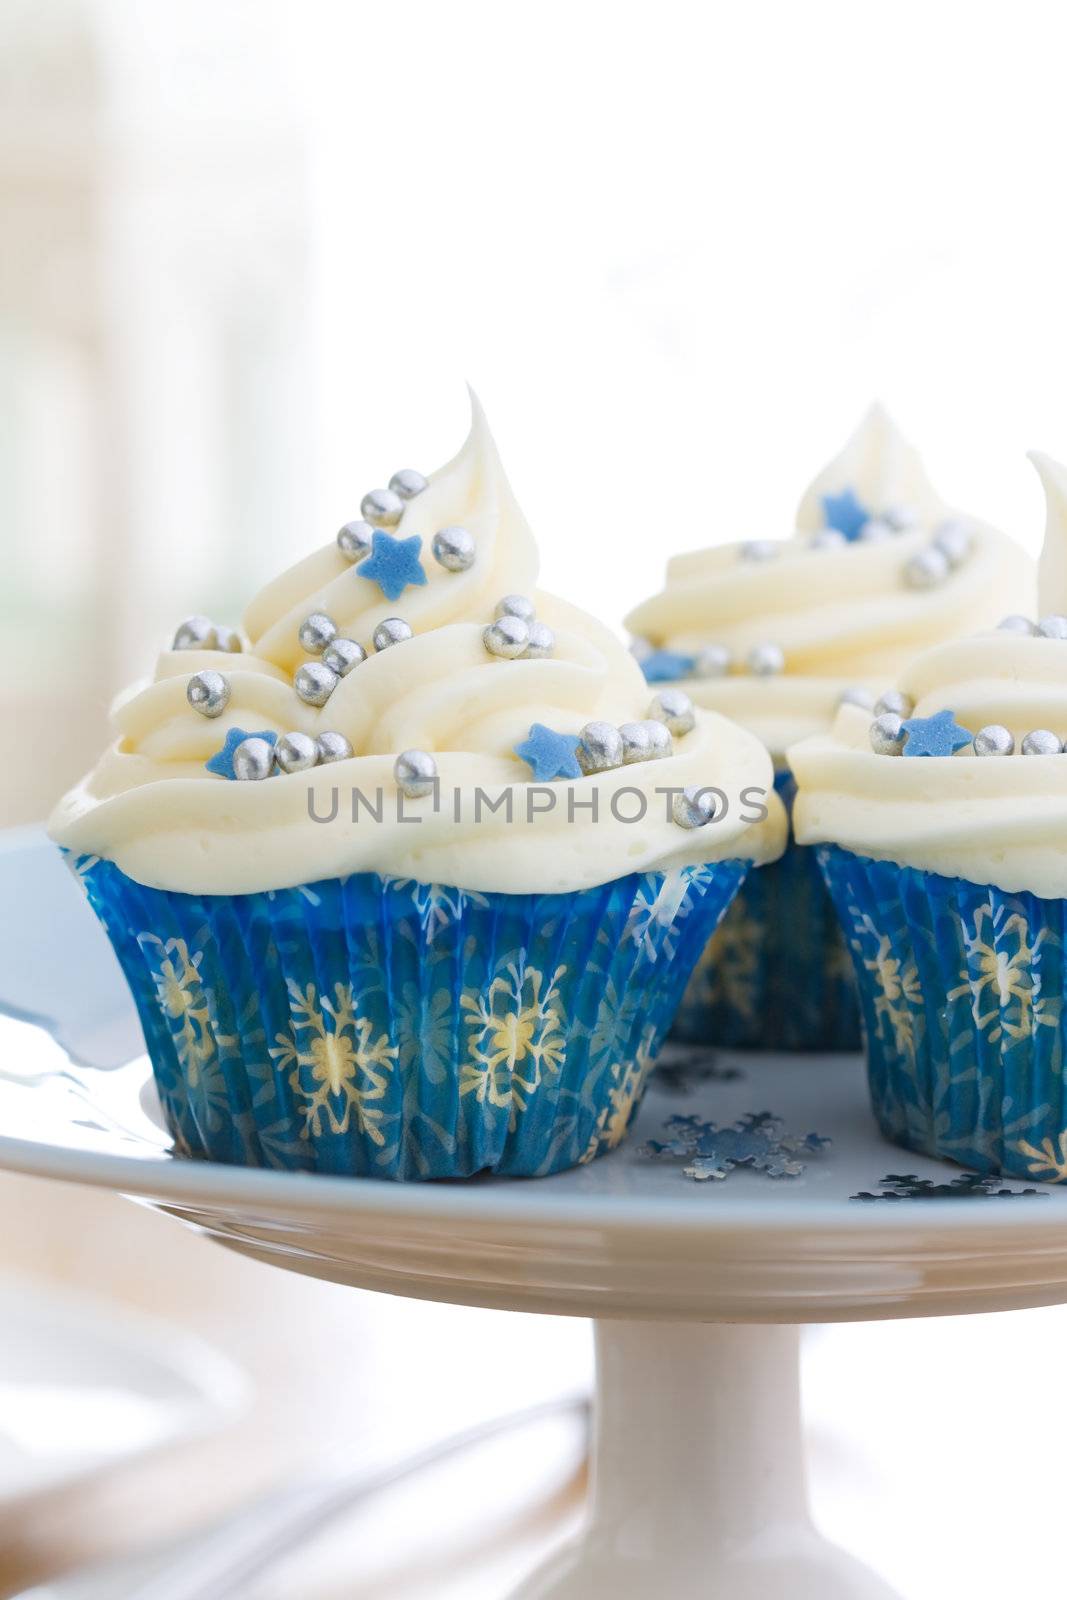 Cupcakes by RuthBlack